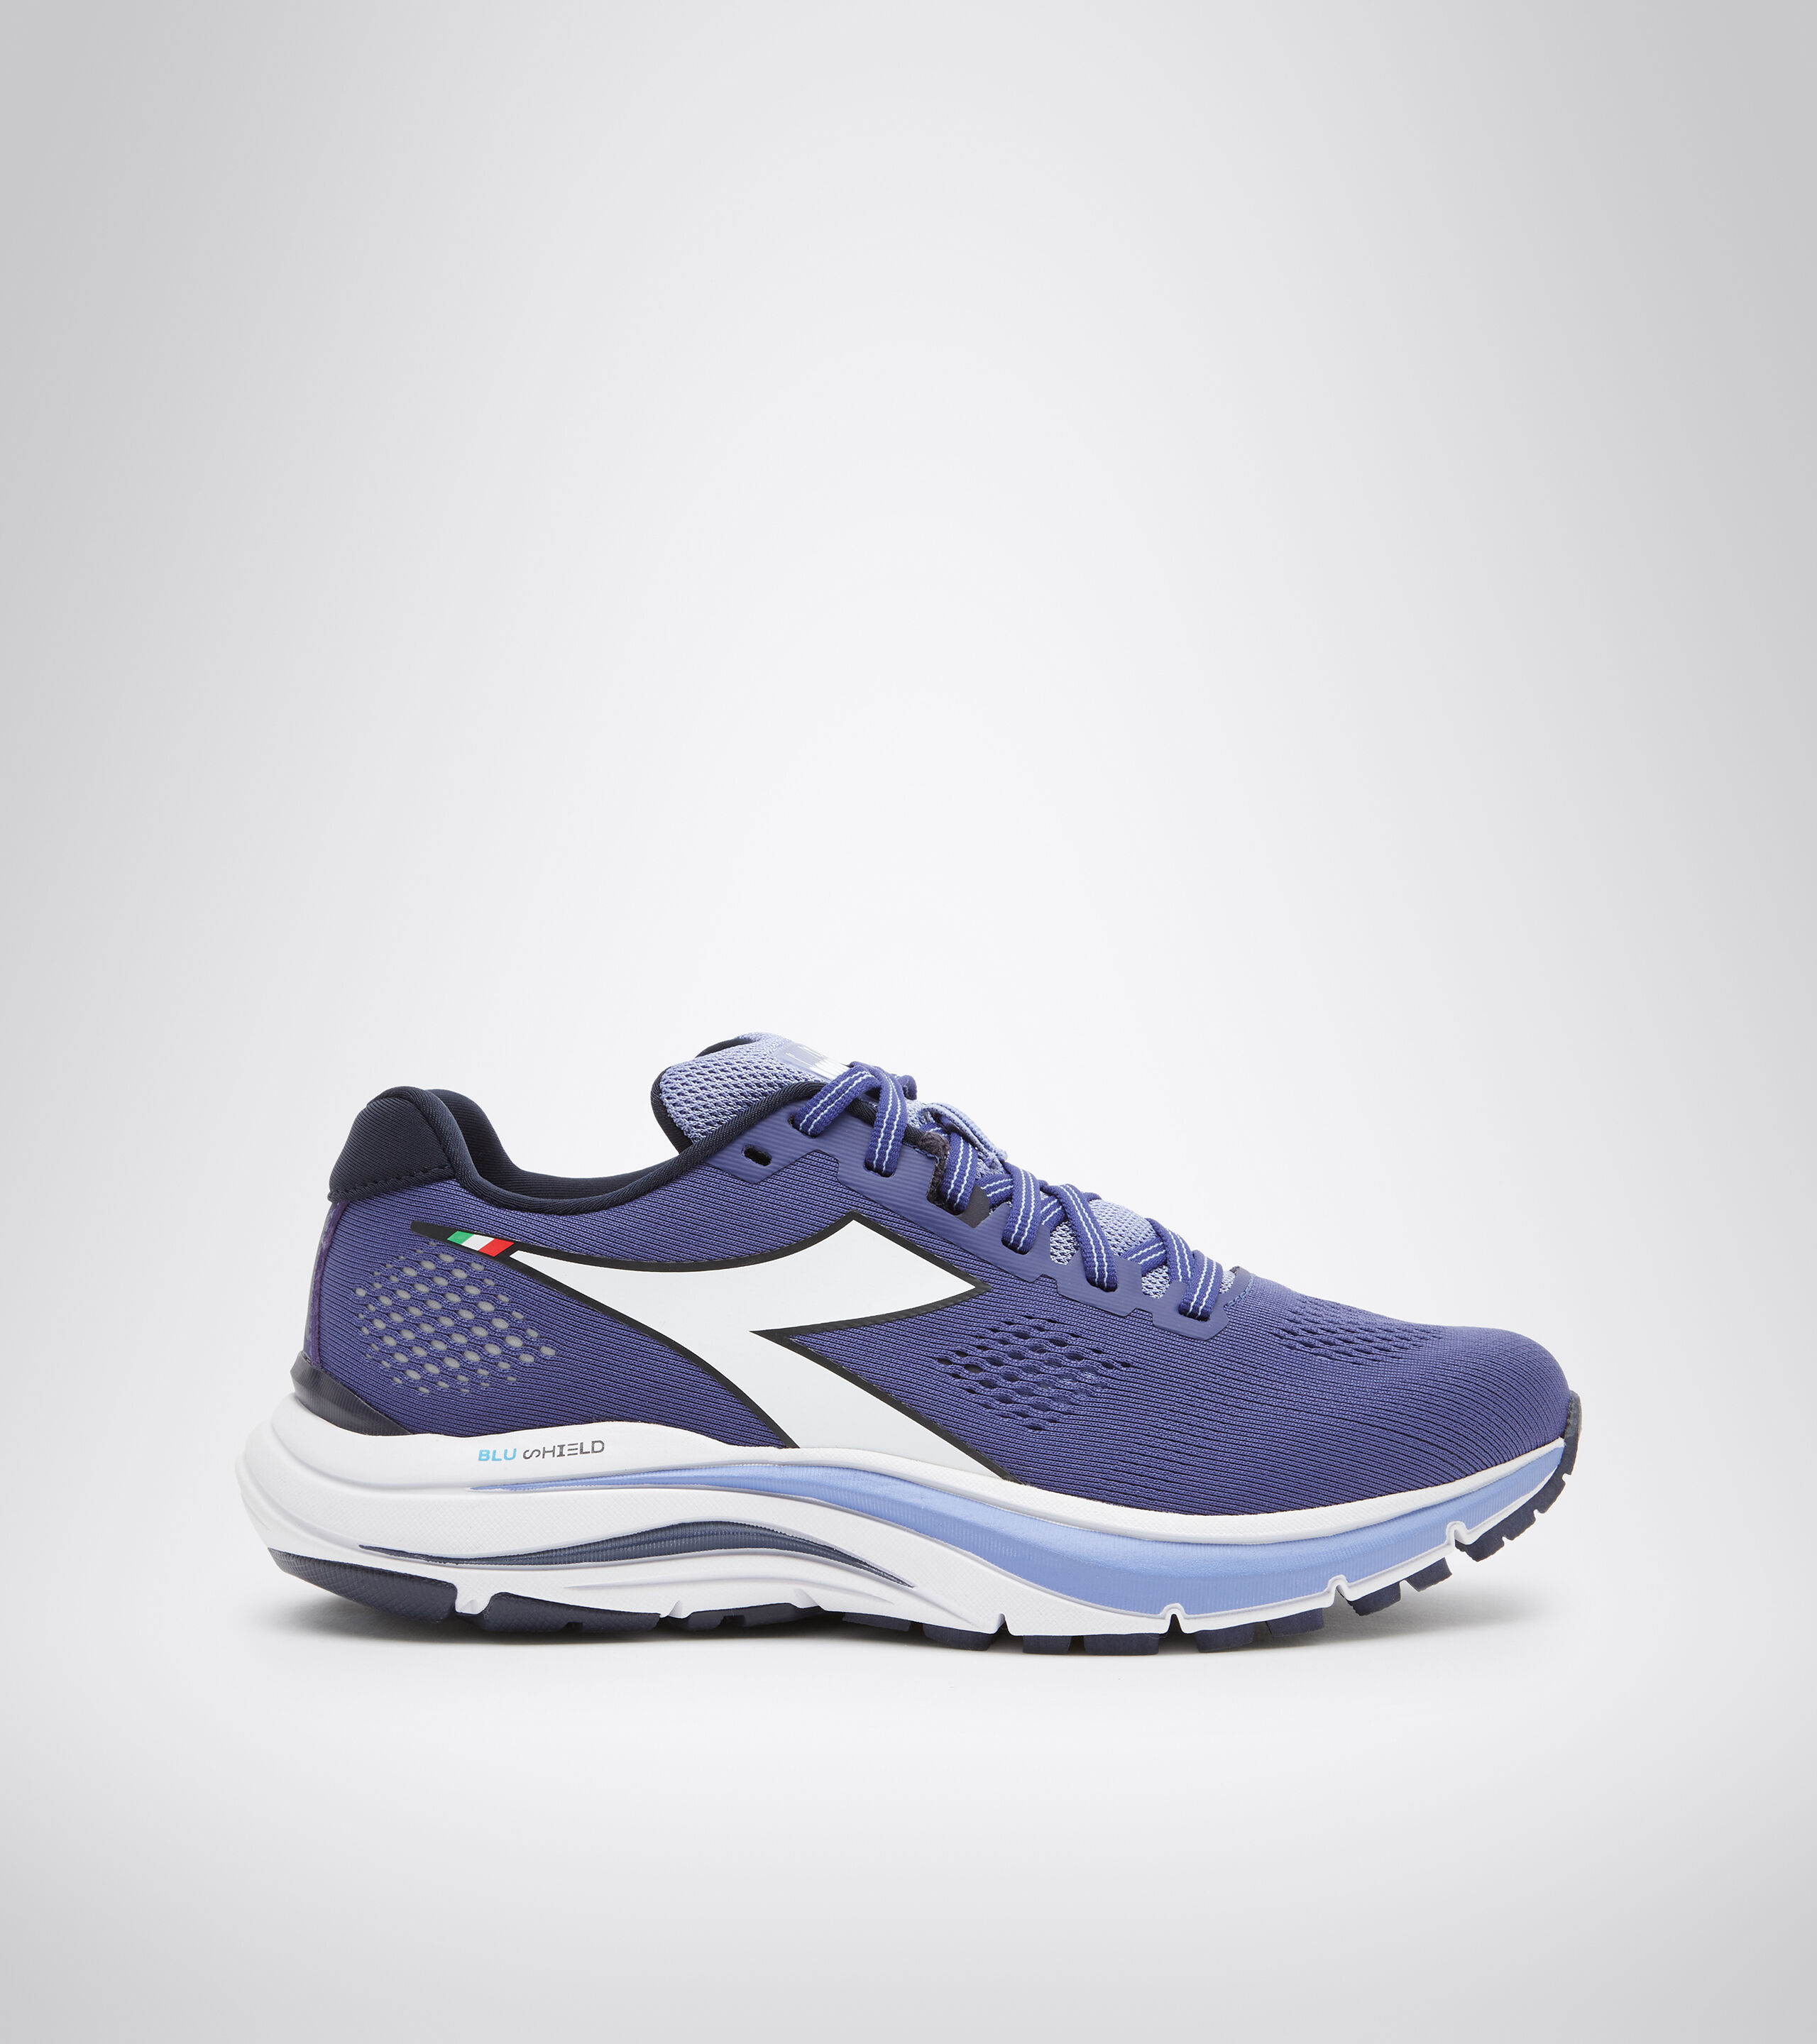 FS 2020 Diadora Myth blushield 5 W Womens Running Shoes 101.175619 